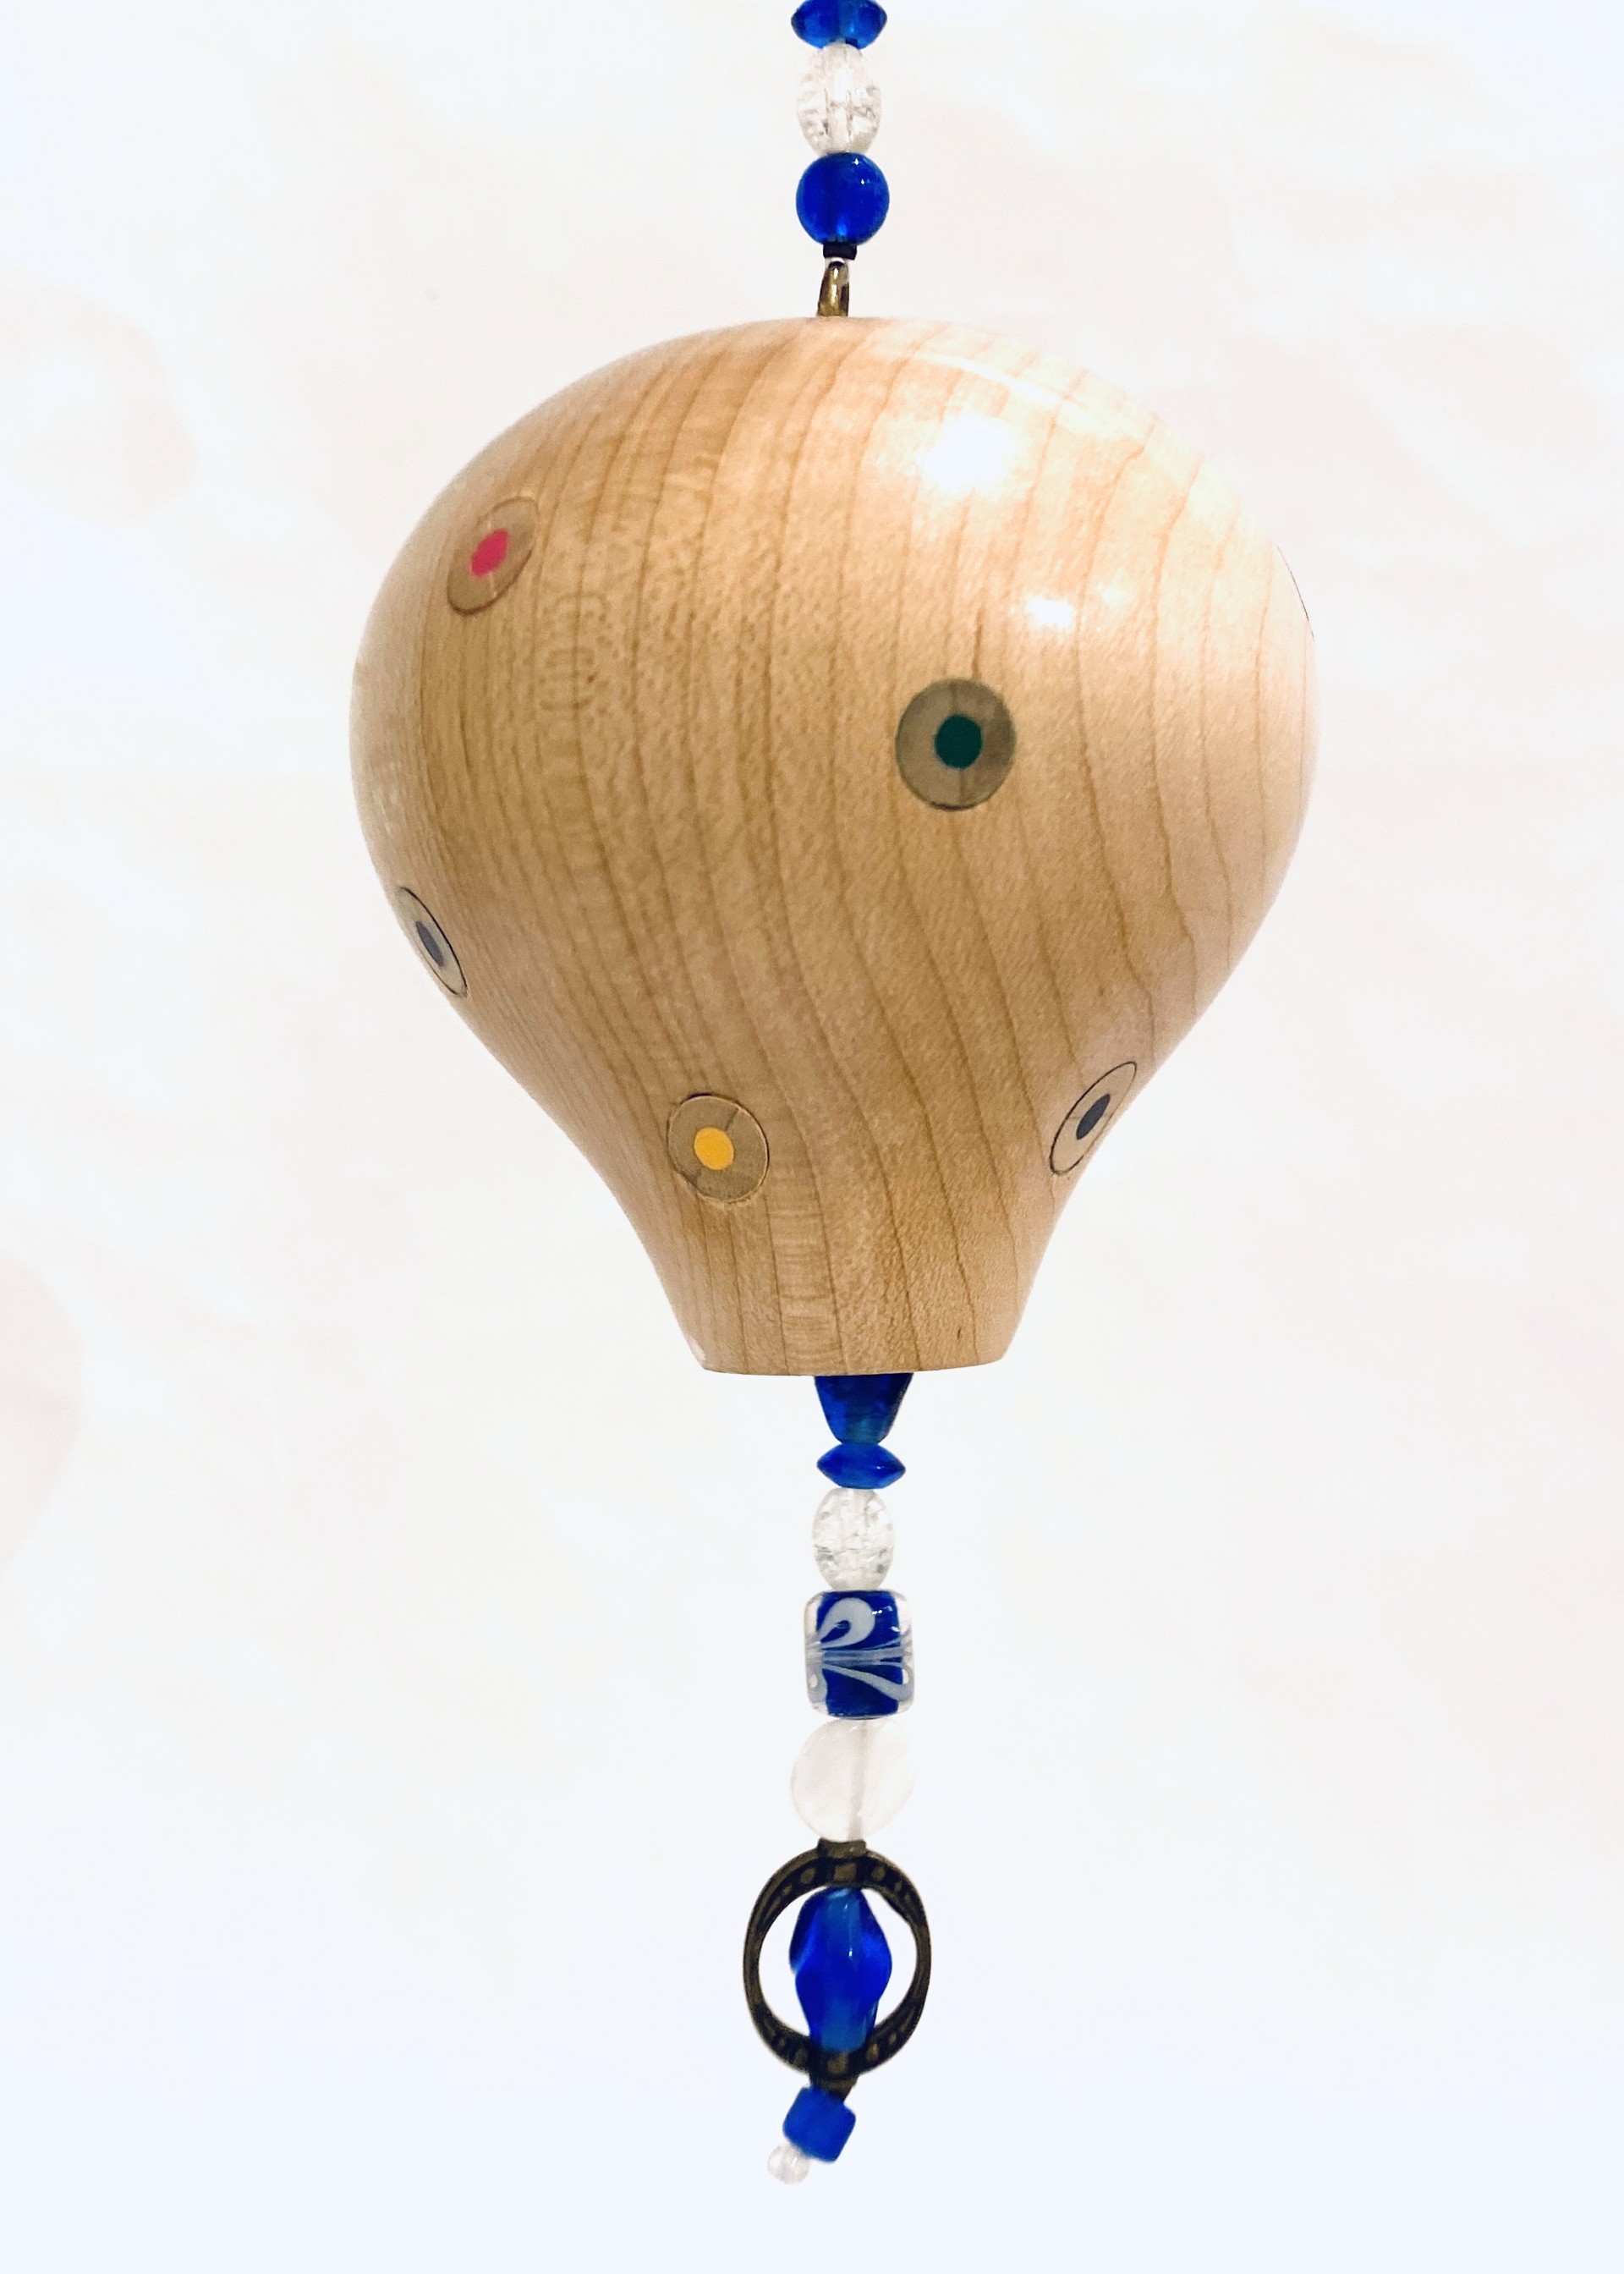 MT23-5 Whimsical Hot Air Balloon Ornament by Marc Tannenbaum